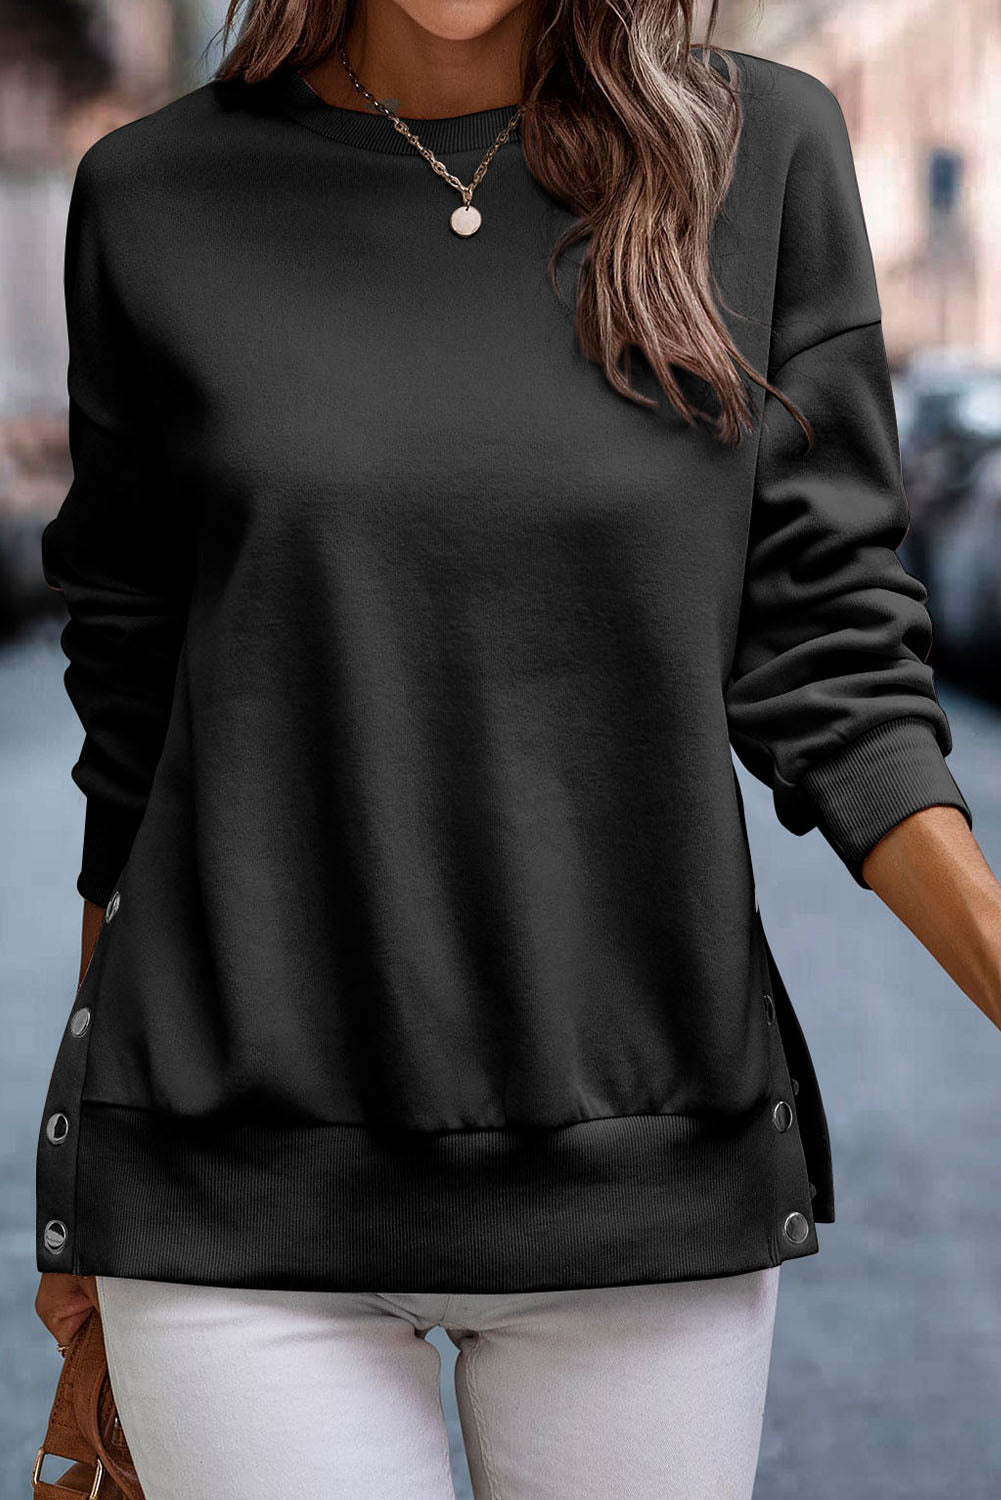 Hellrosa Pullover-Sweatshirt mit Druckknöpfen und seitlichen Schlitzen